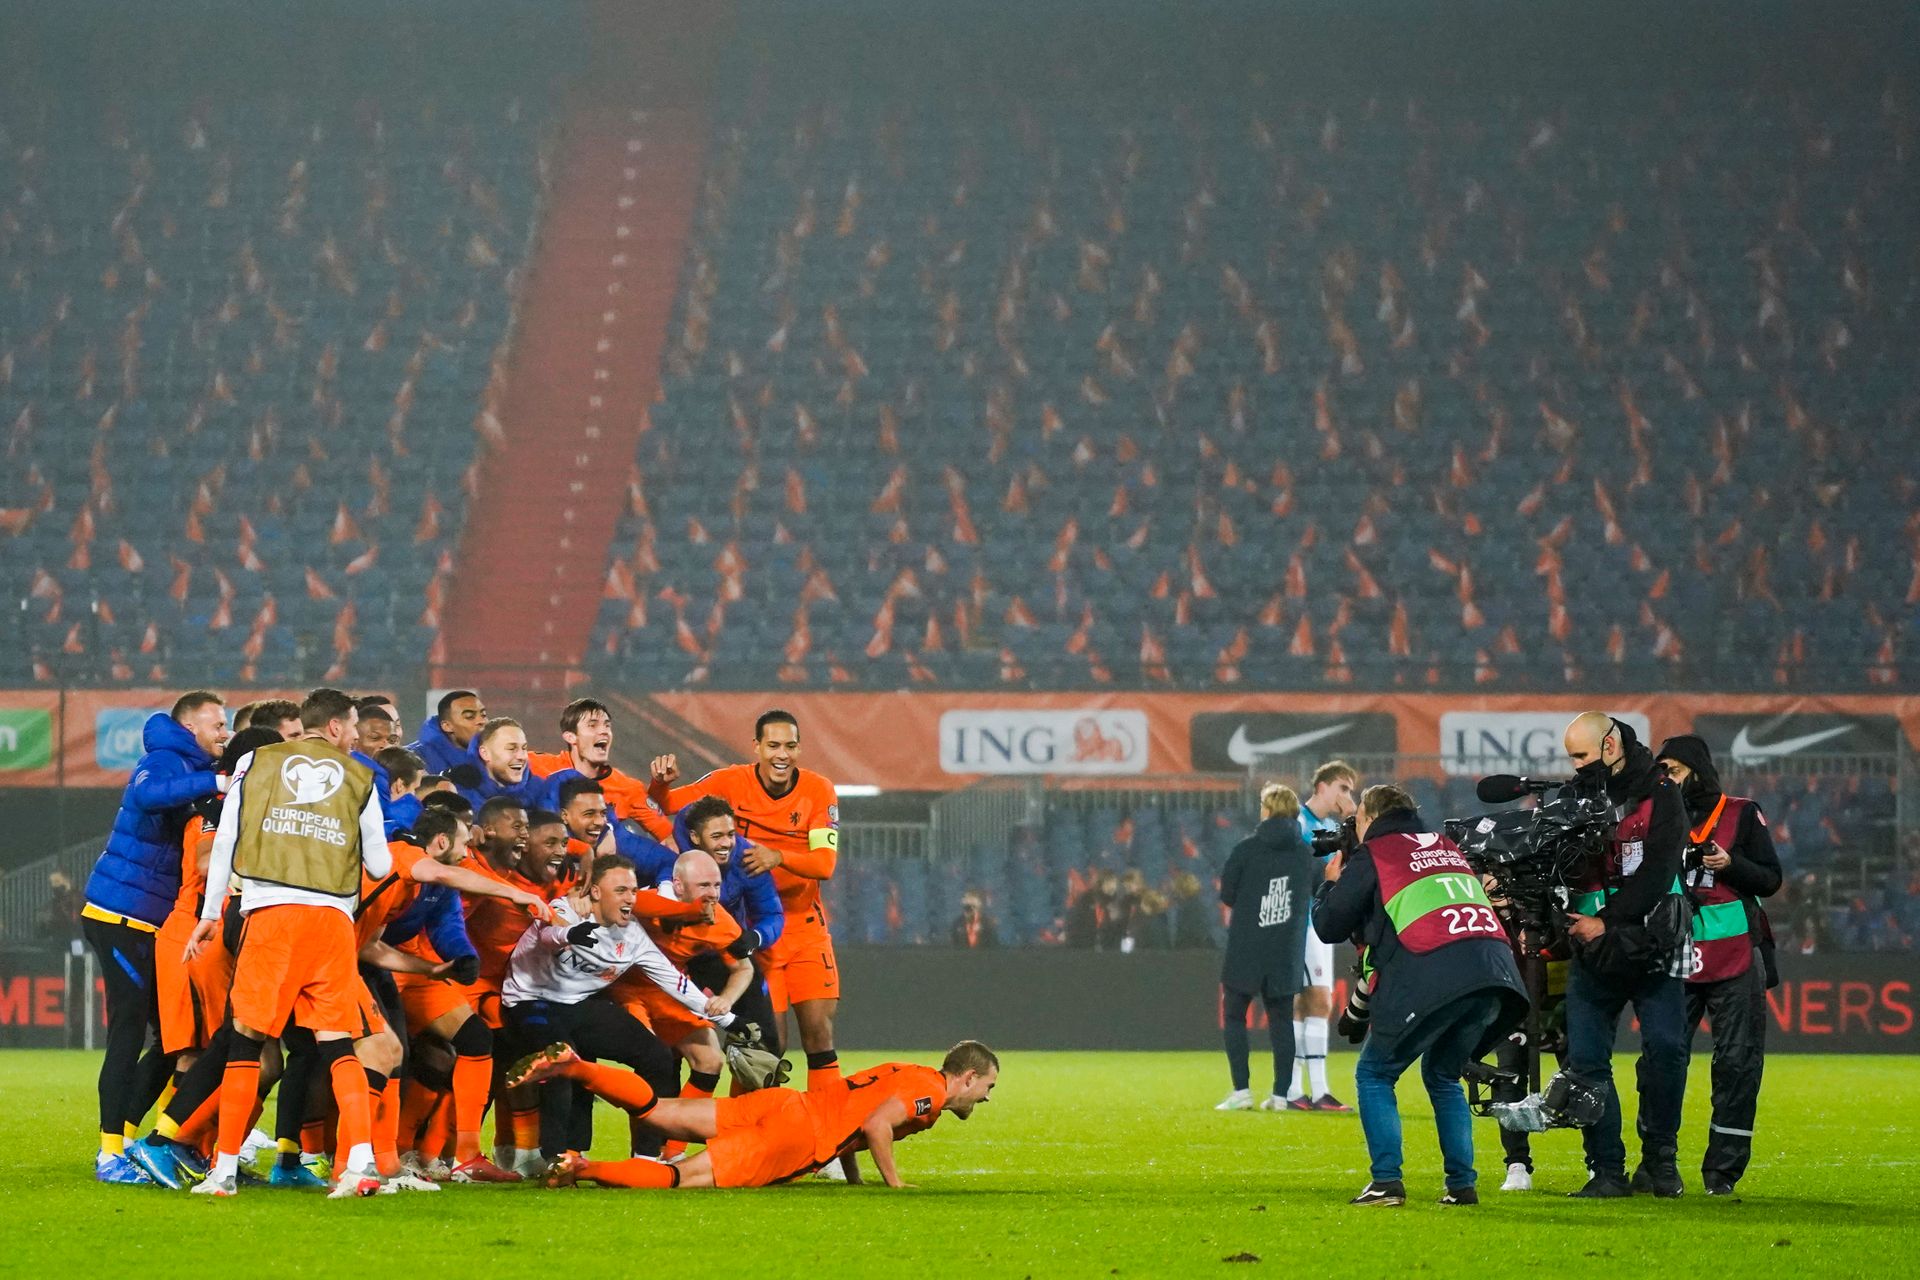 Jublende fotballspillere i oransje drakt tar et lagbilde